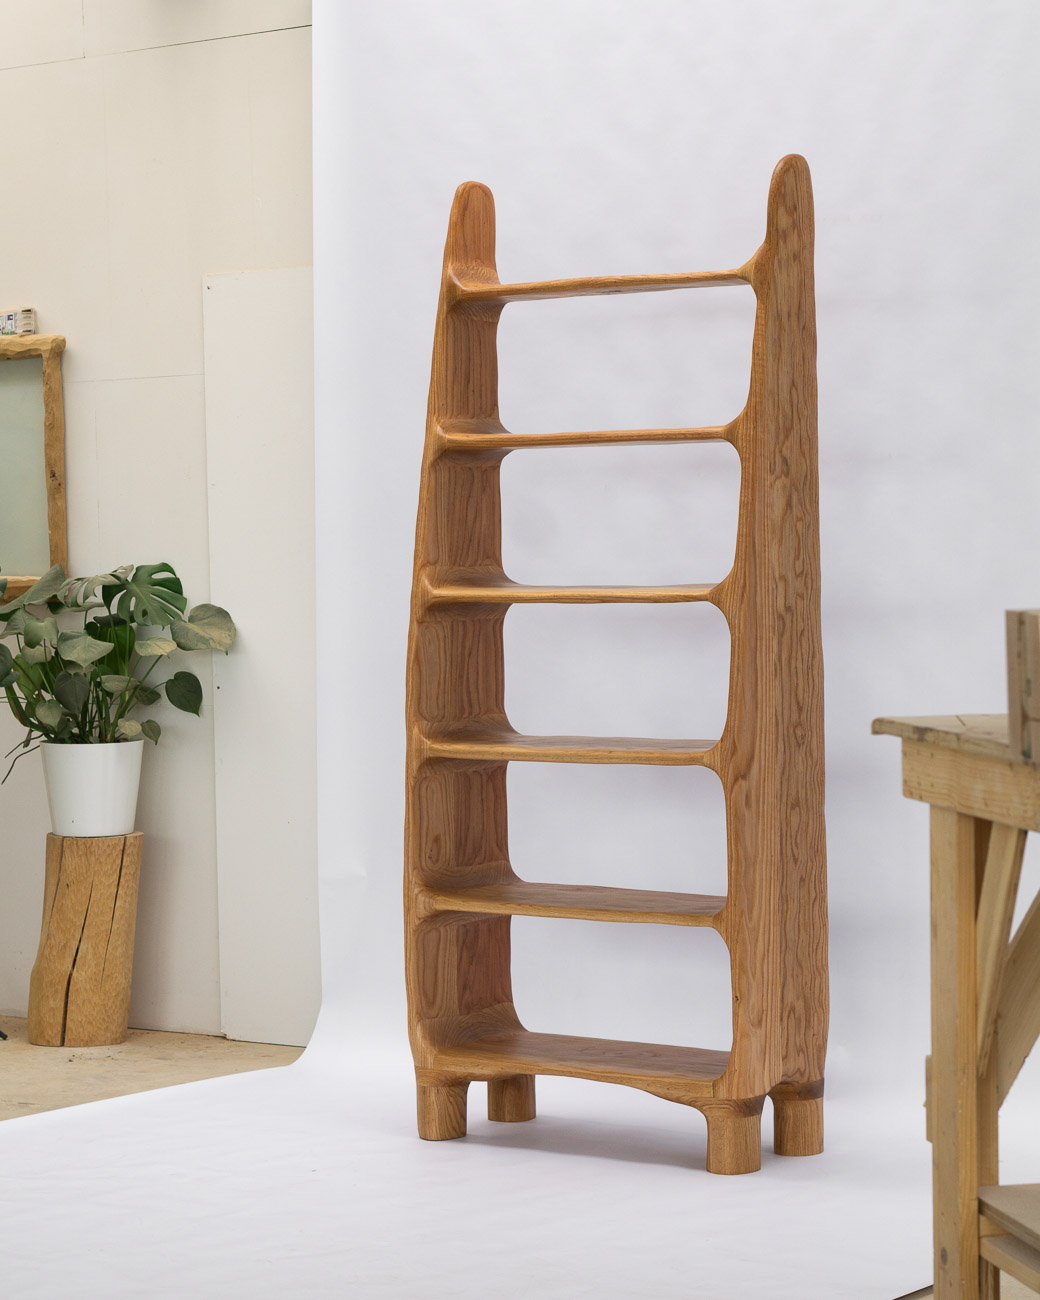 sculptural shelf made of red oak wood